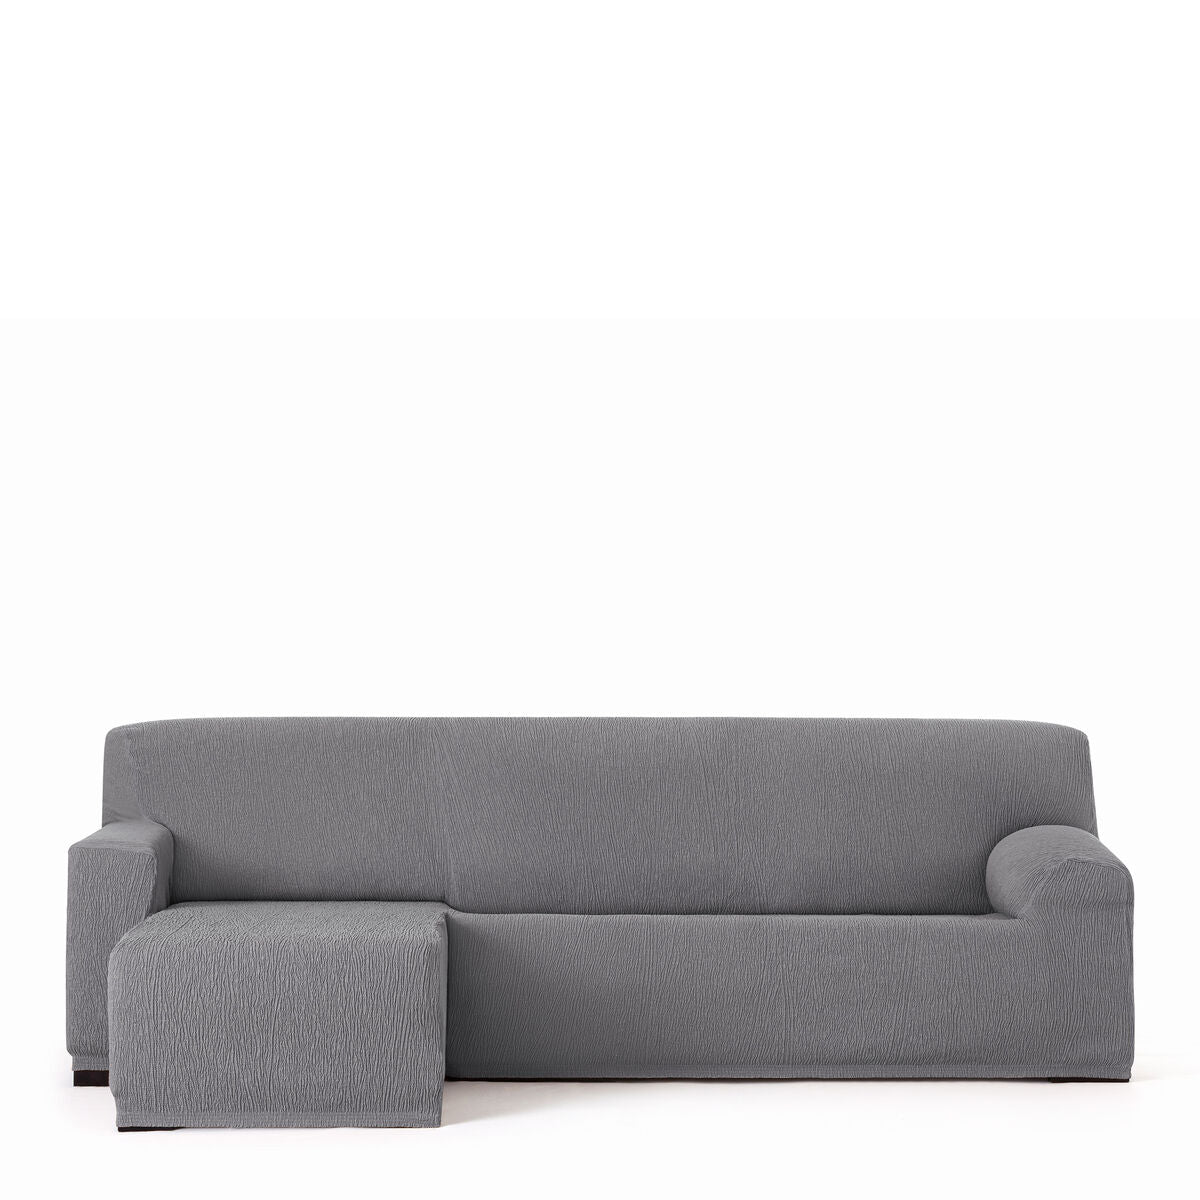 Copertura per sedia a lunghezza sinistra lunga Eysa Troya Grey 170 x 110 x 310 cm